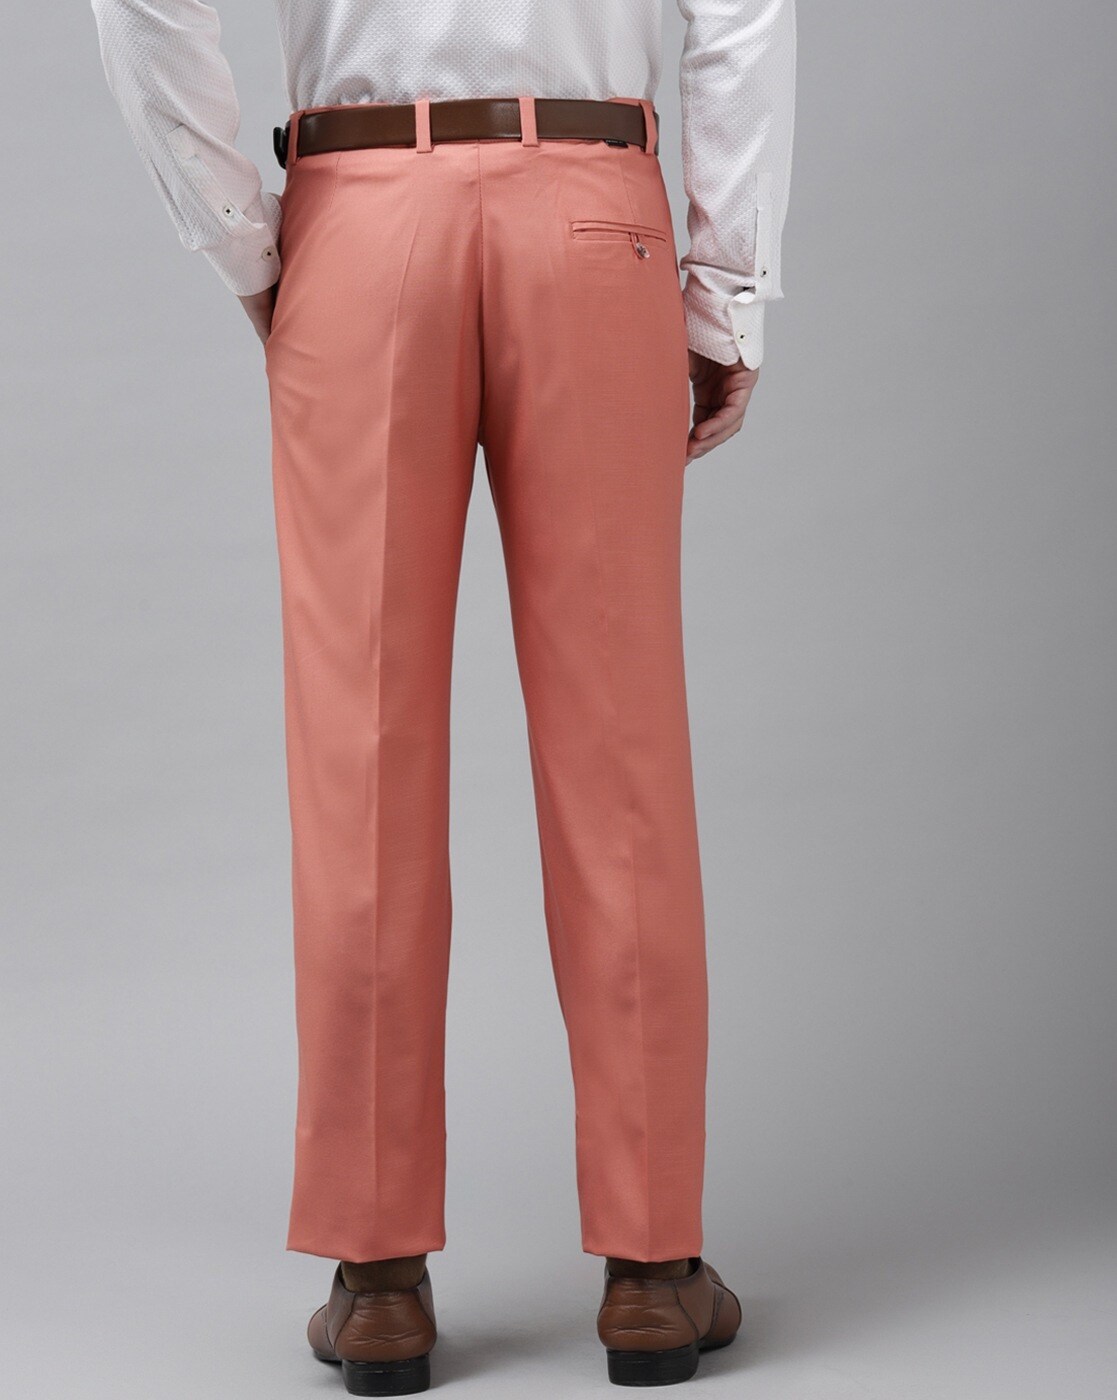 Wool trousers Alexander McQueen Pink size 36 UK - US in Wool - 33116185